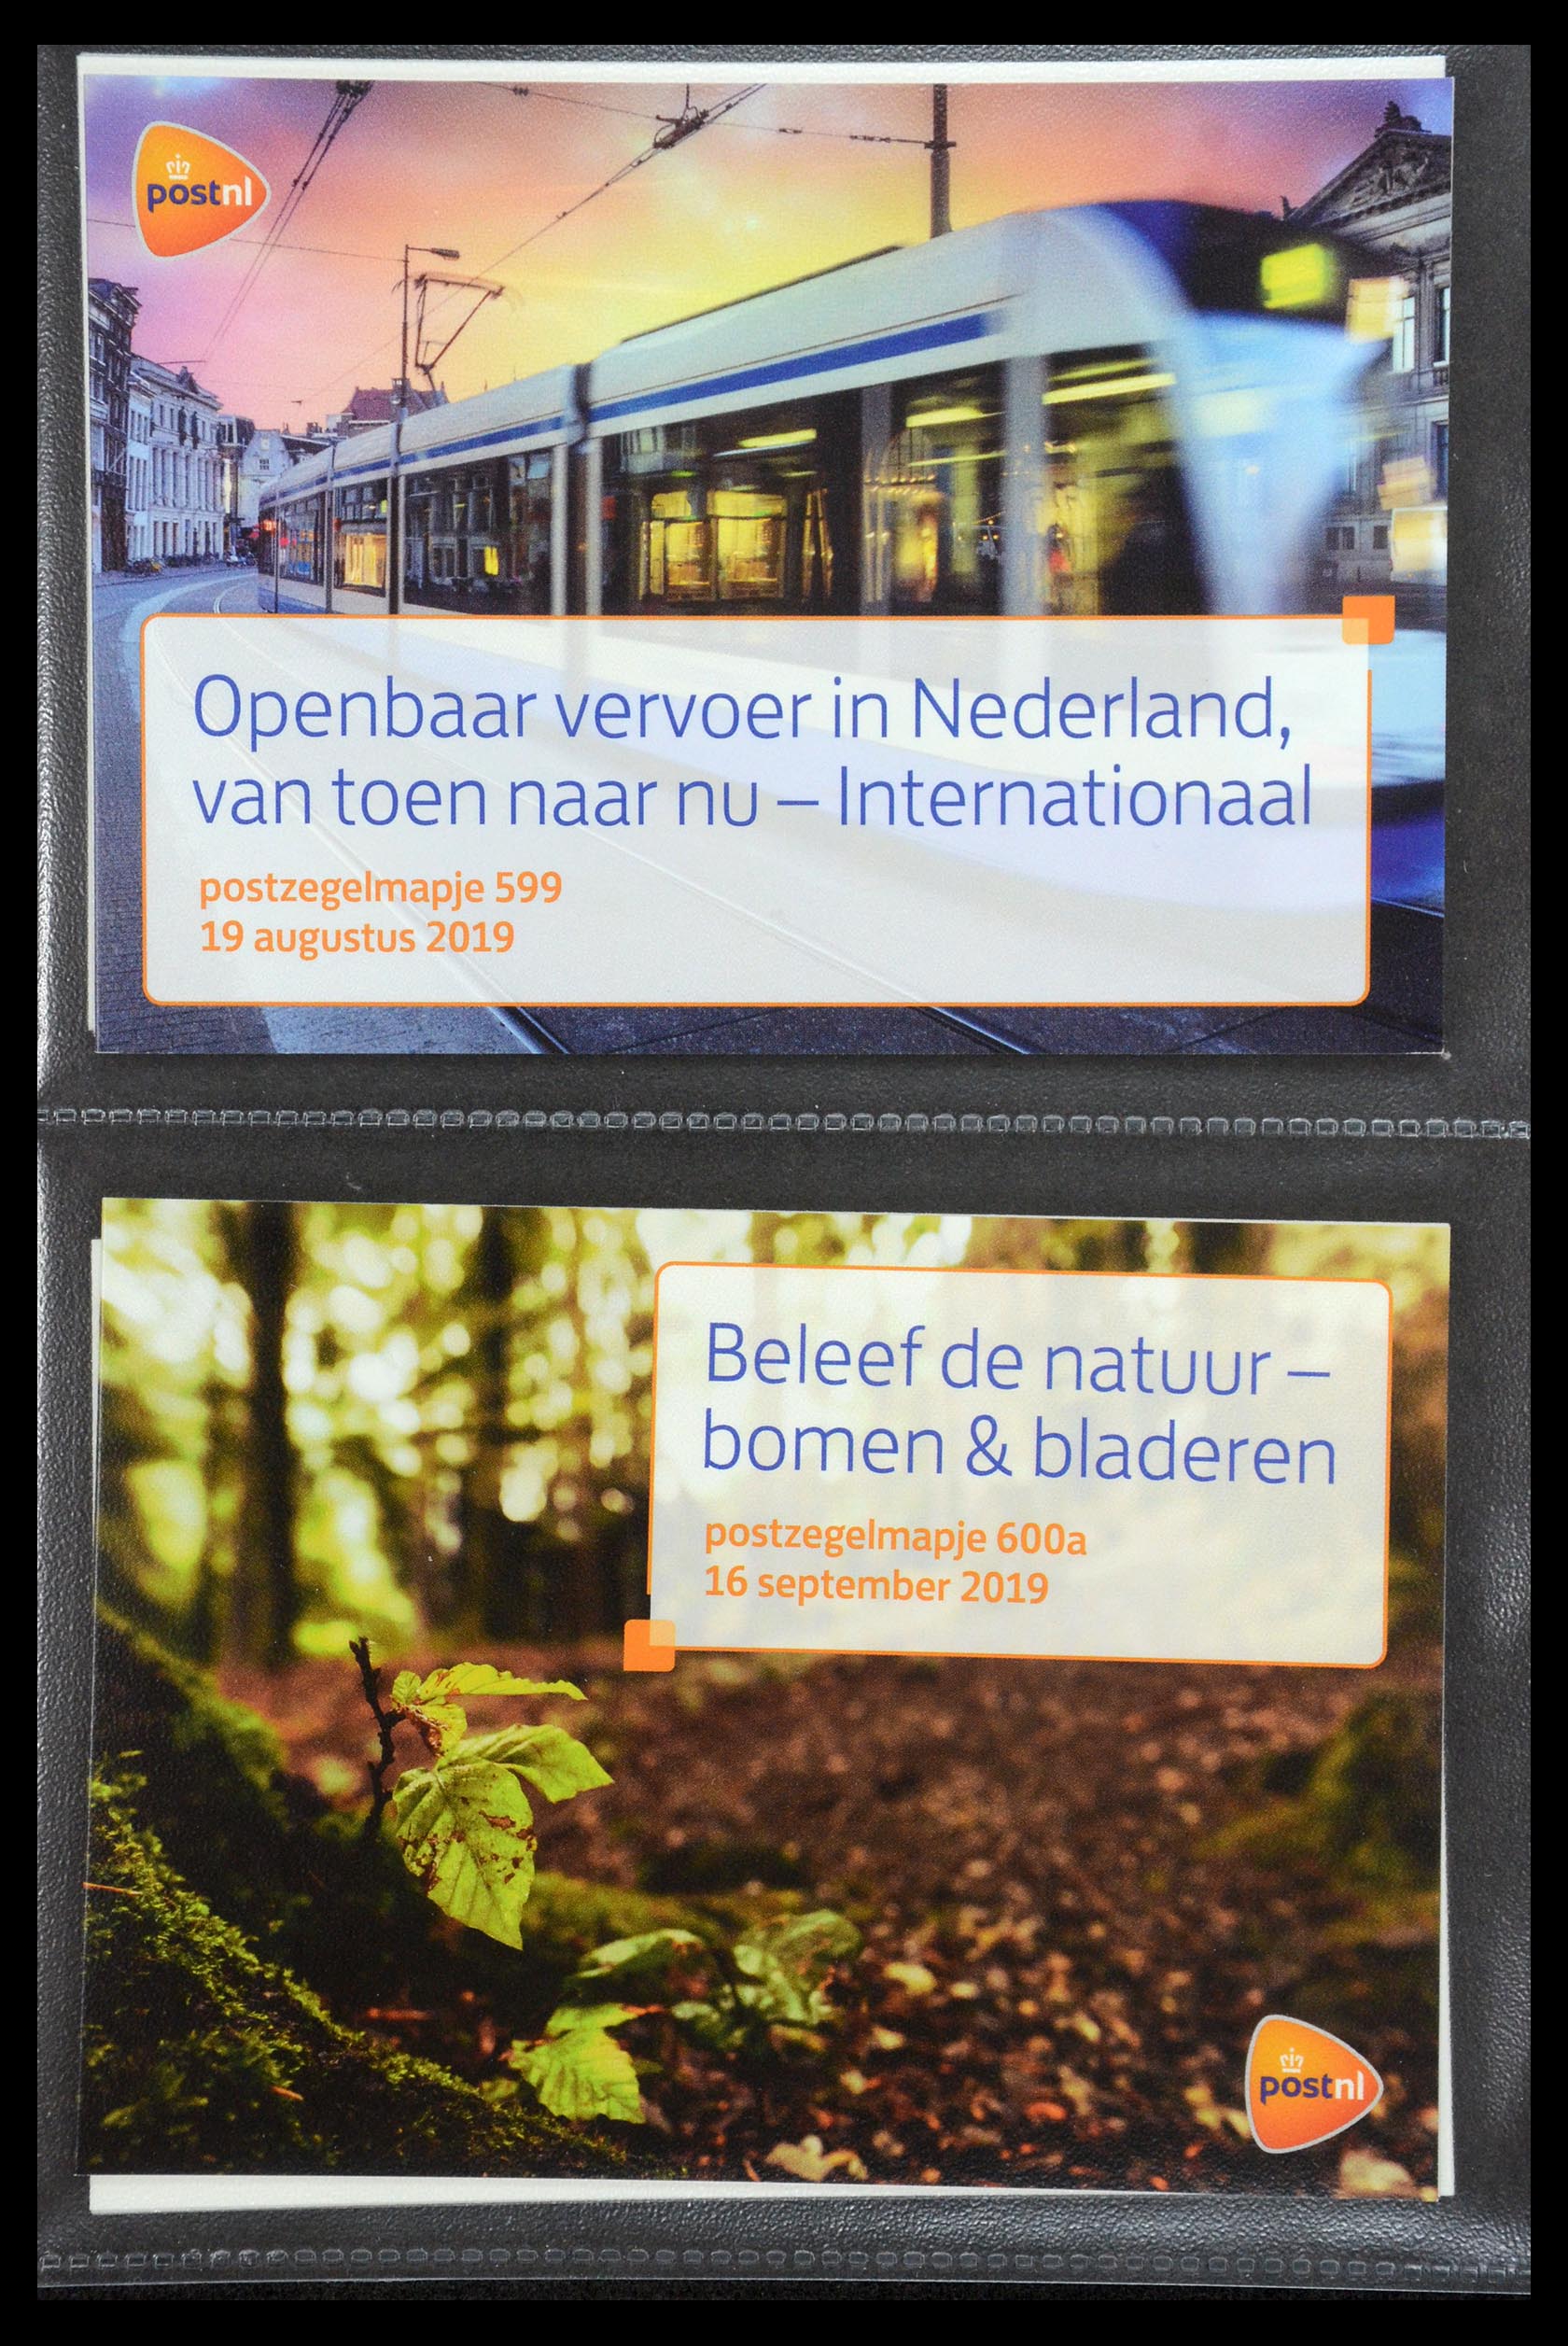 35187 362 - Stamp Collection 35187 Netherlands PTT presentation packs 1982-2019!